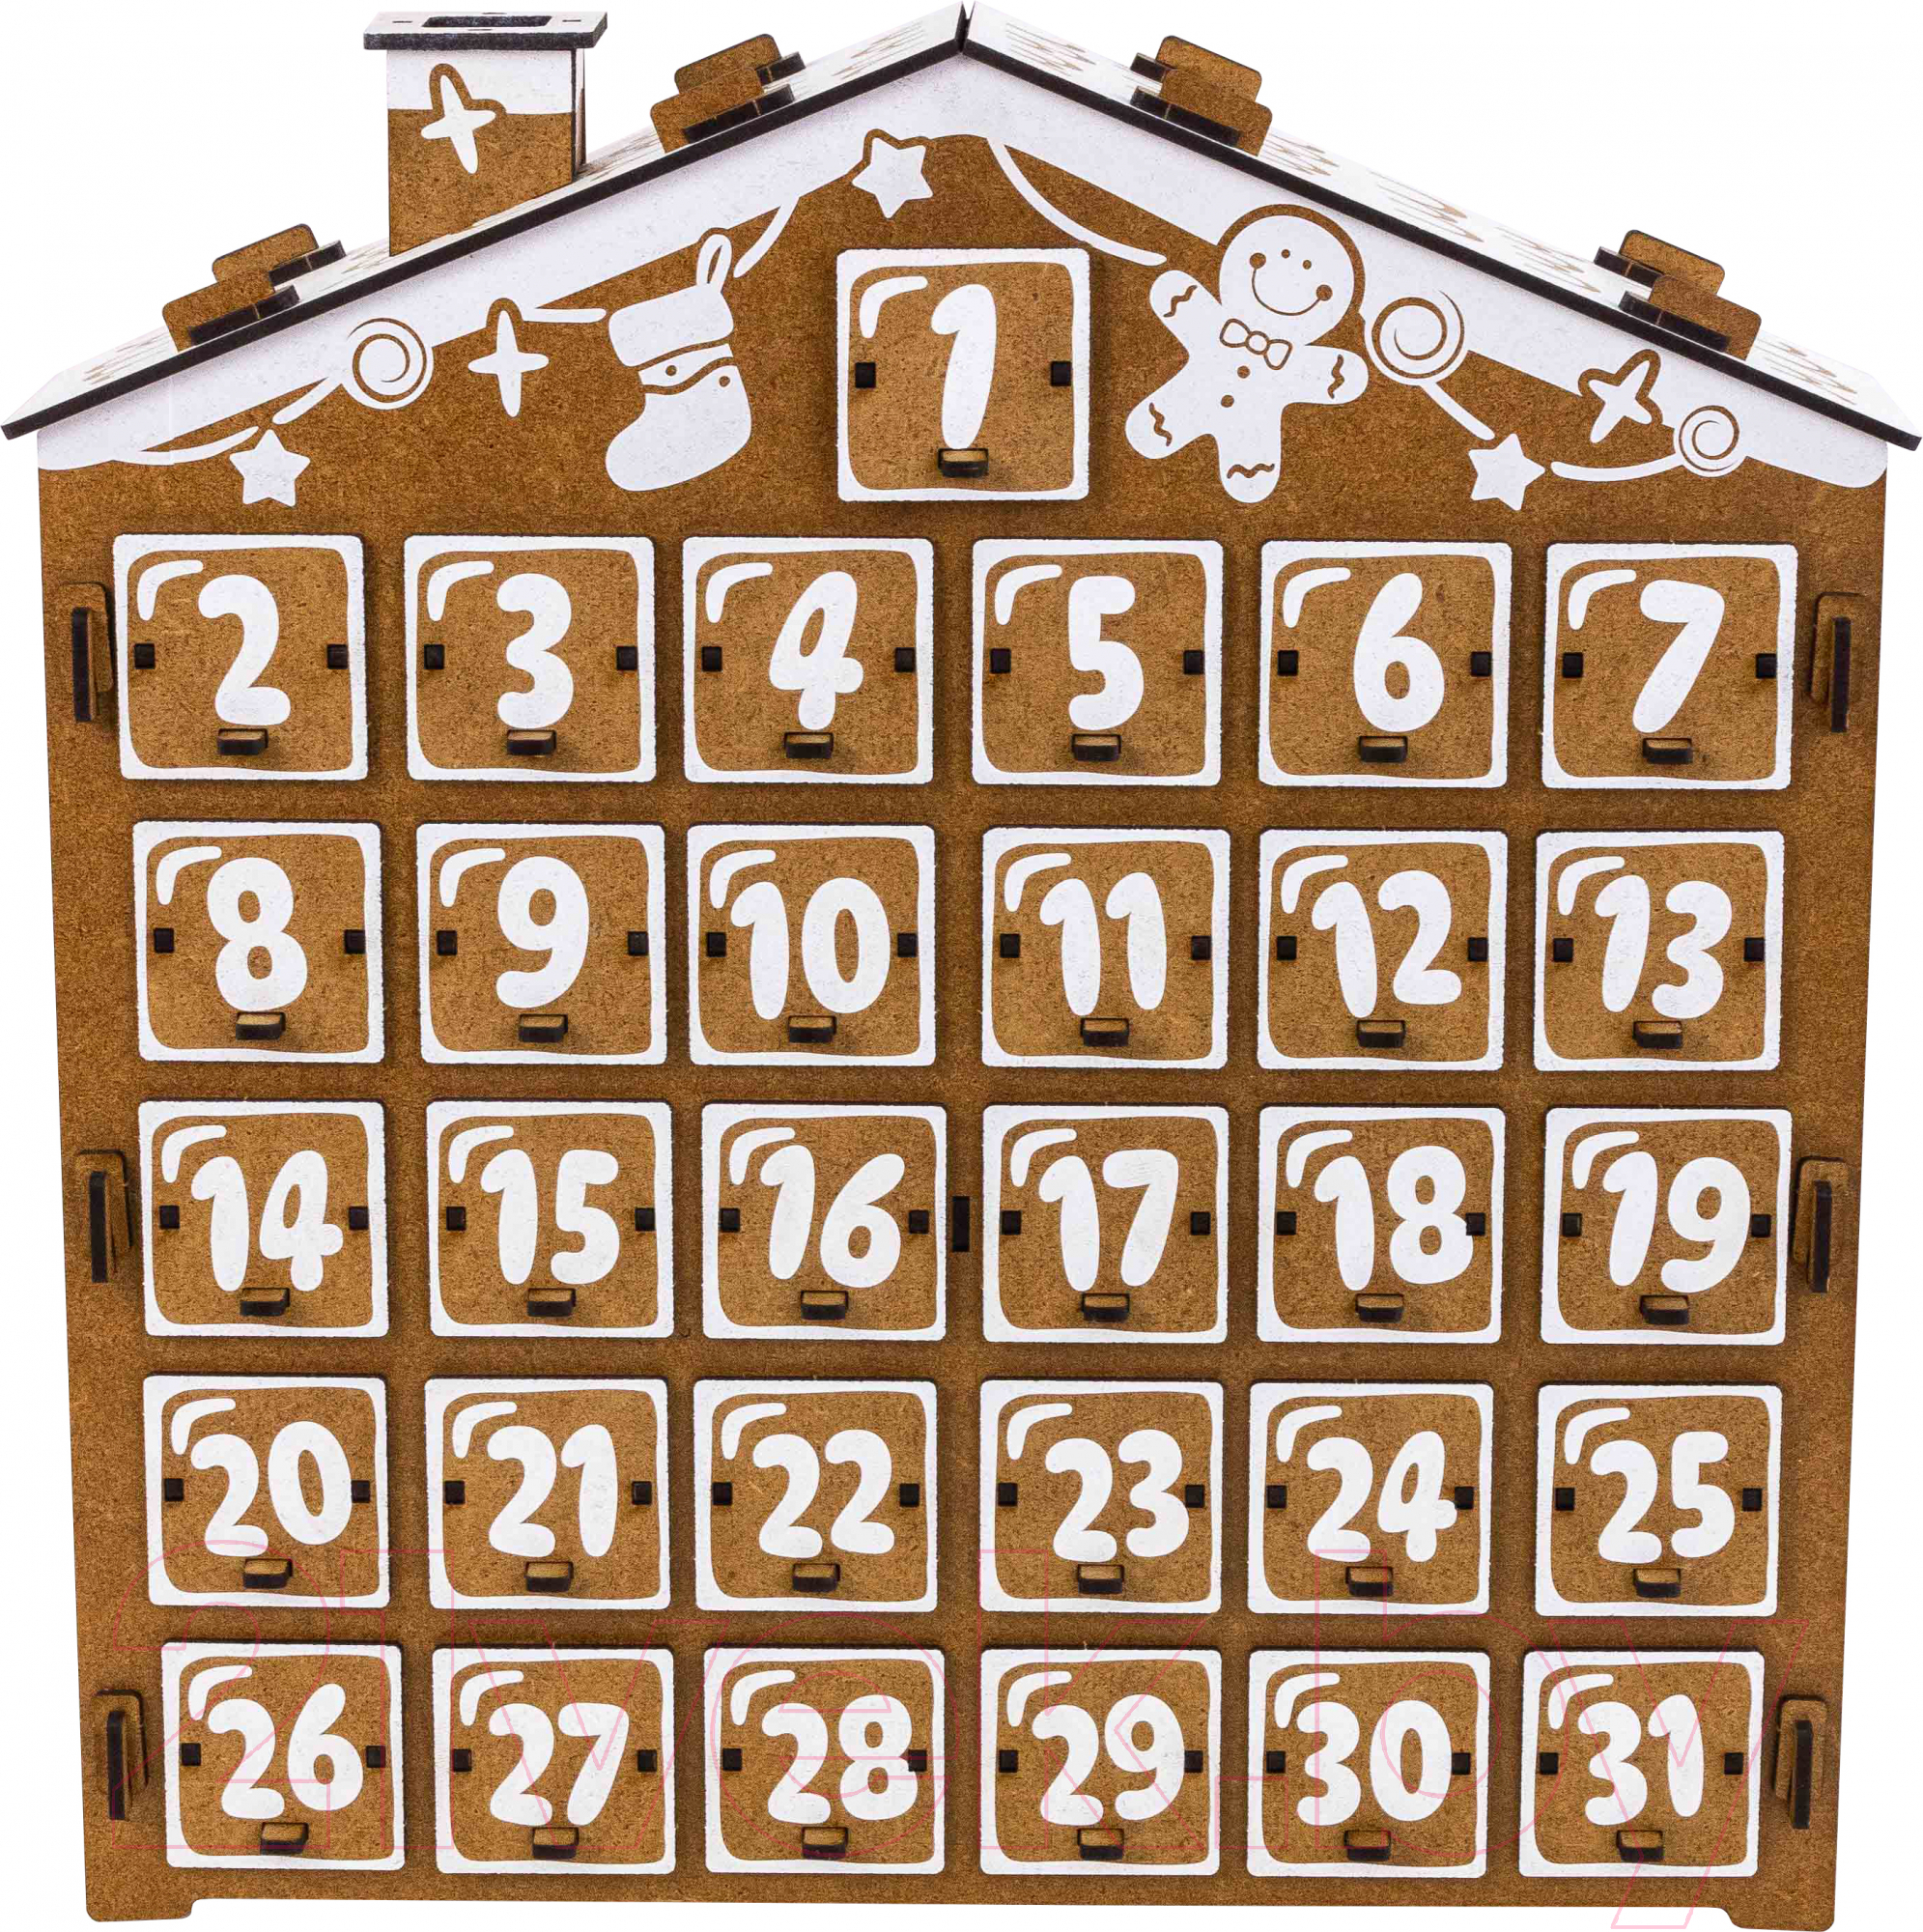 Адвент-календарь Woody Пряничный домик на 31 день / 05711